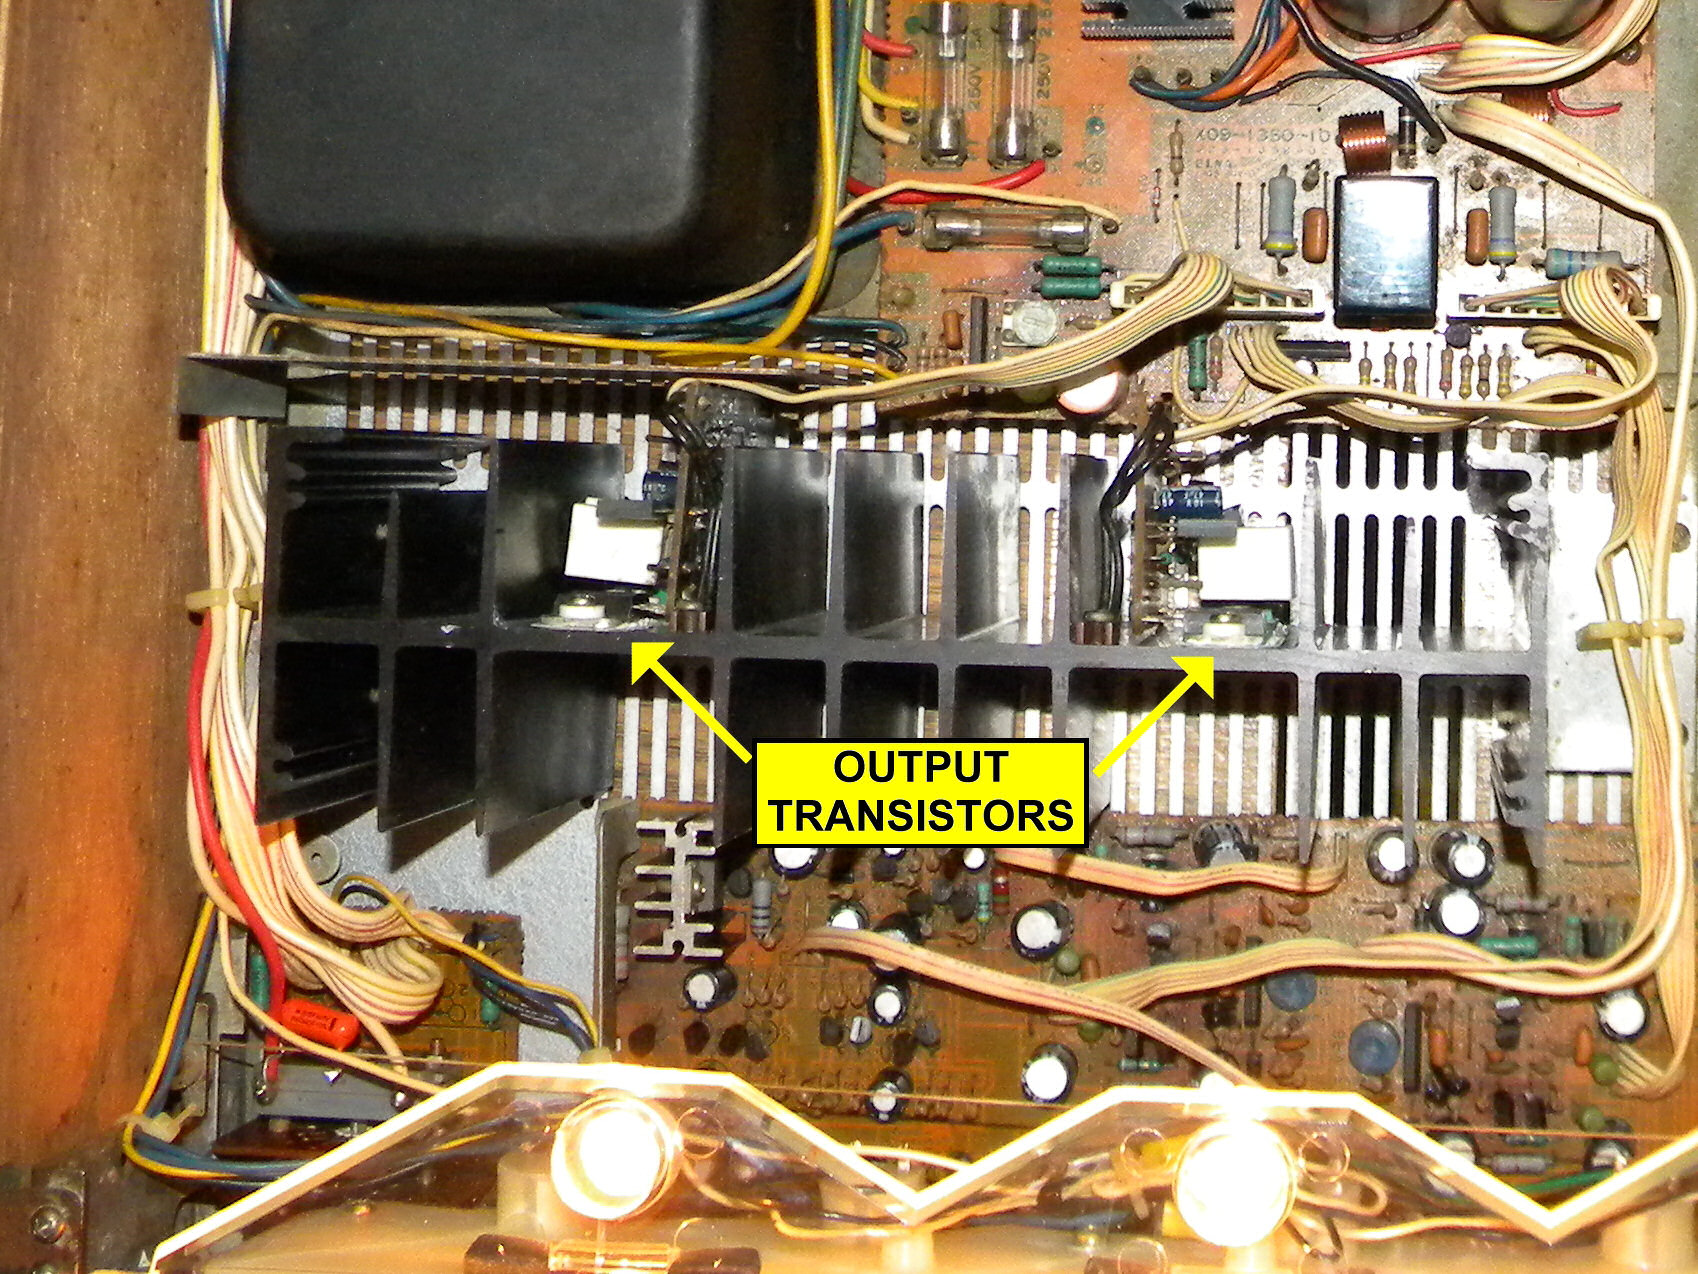 KR-6050OutputTransistors.jpg